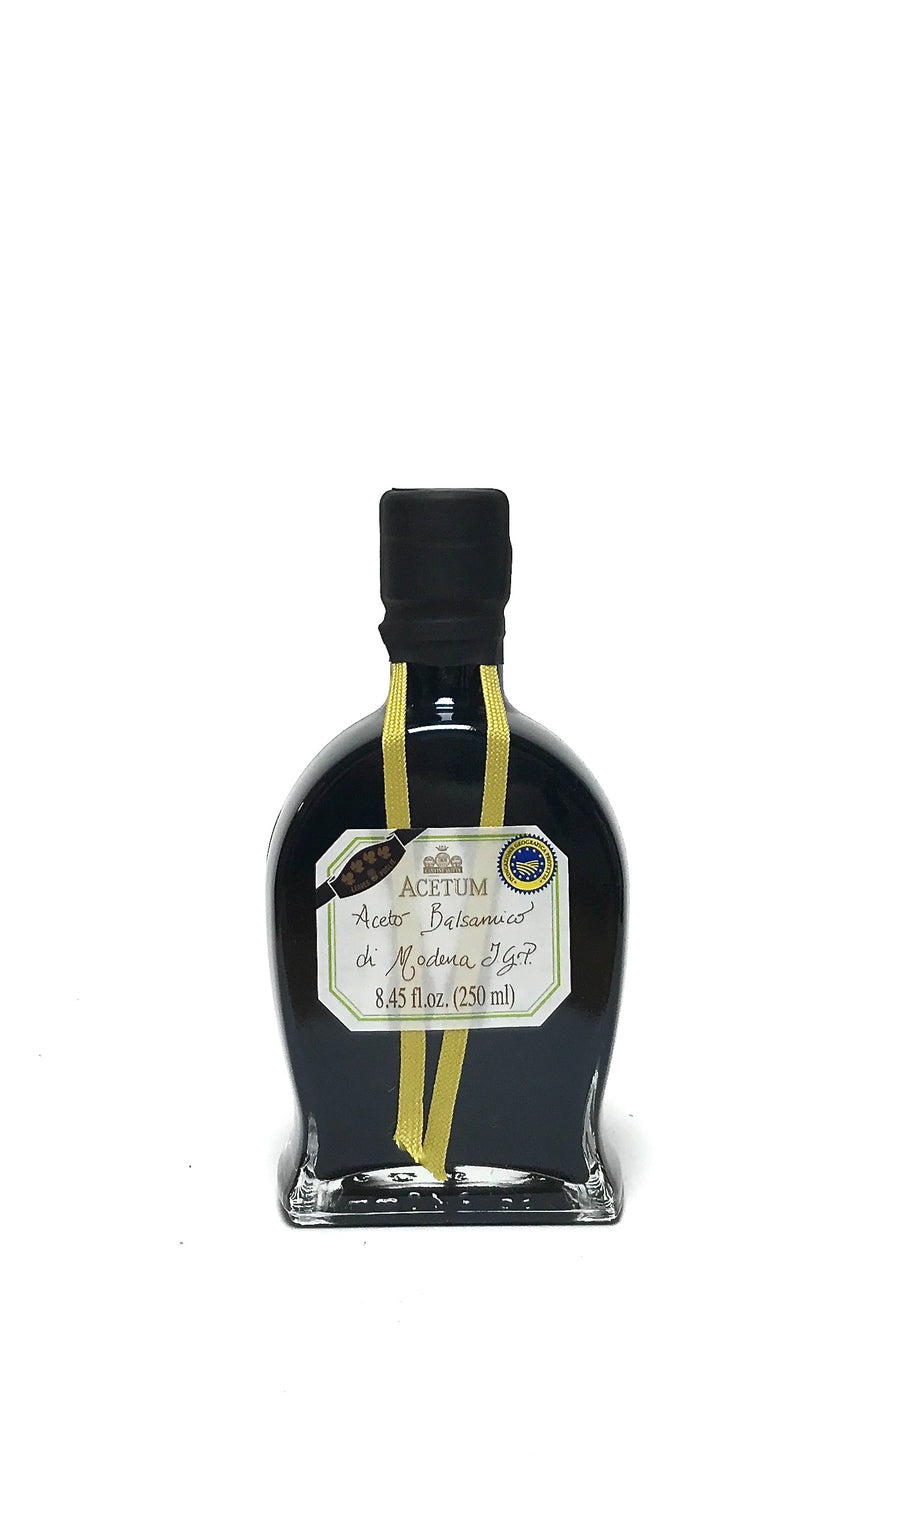 Acetum Balsamic Vinegar of Modena 4 Leaves 250ml